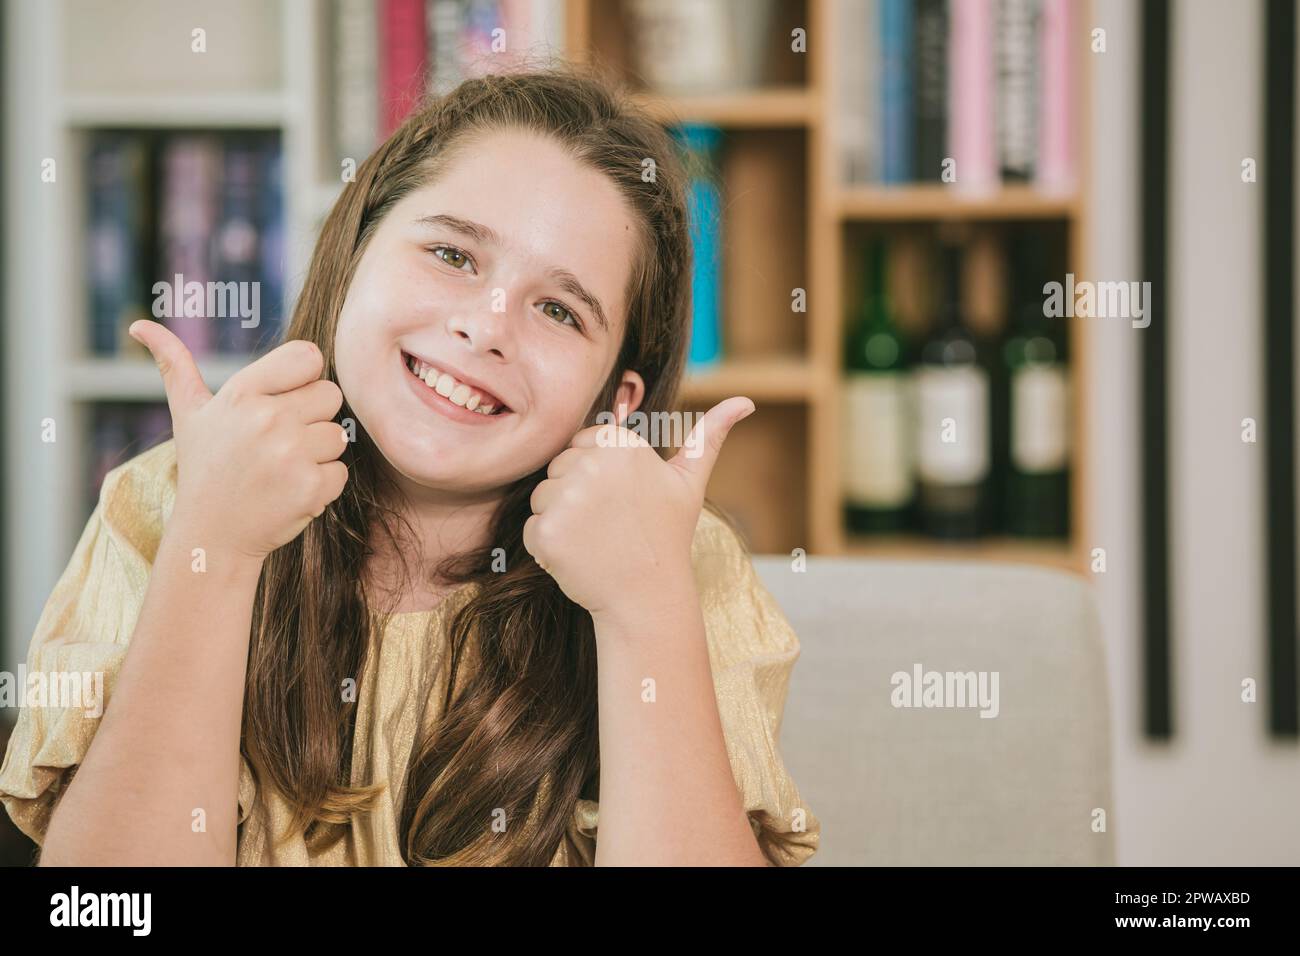 cute bambino bambina ragazza caucasica capelli castani felice sorridendo due pollici fino come a leggere e l'istruzione a scuola Foto Stock